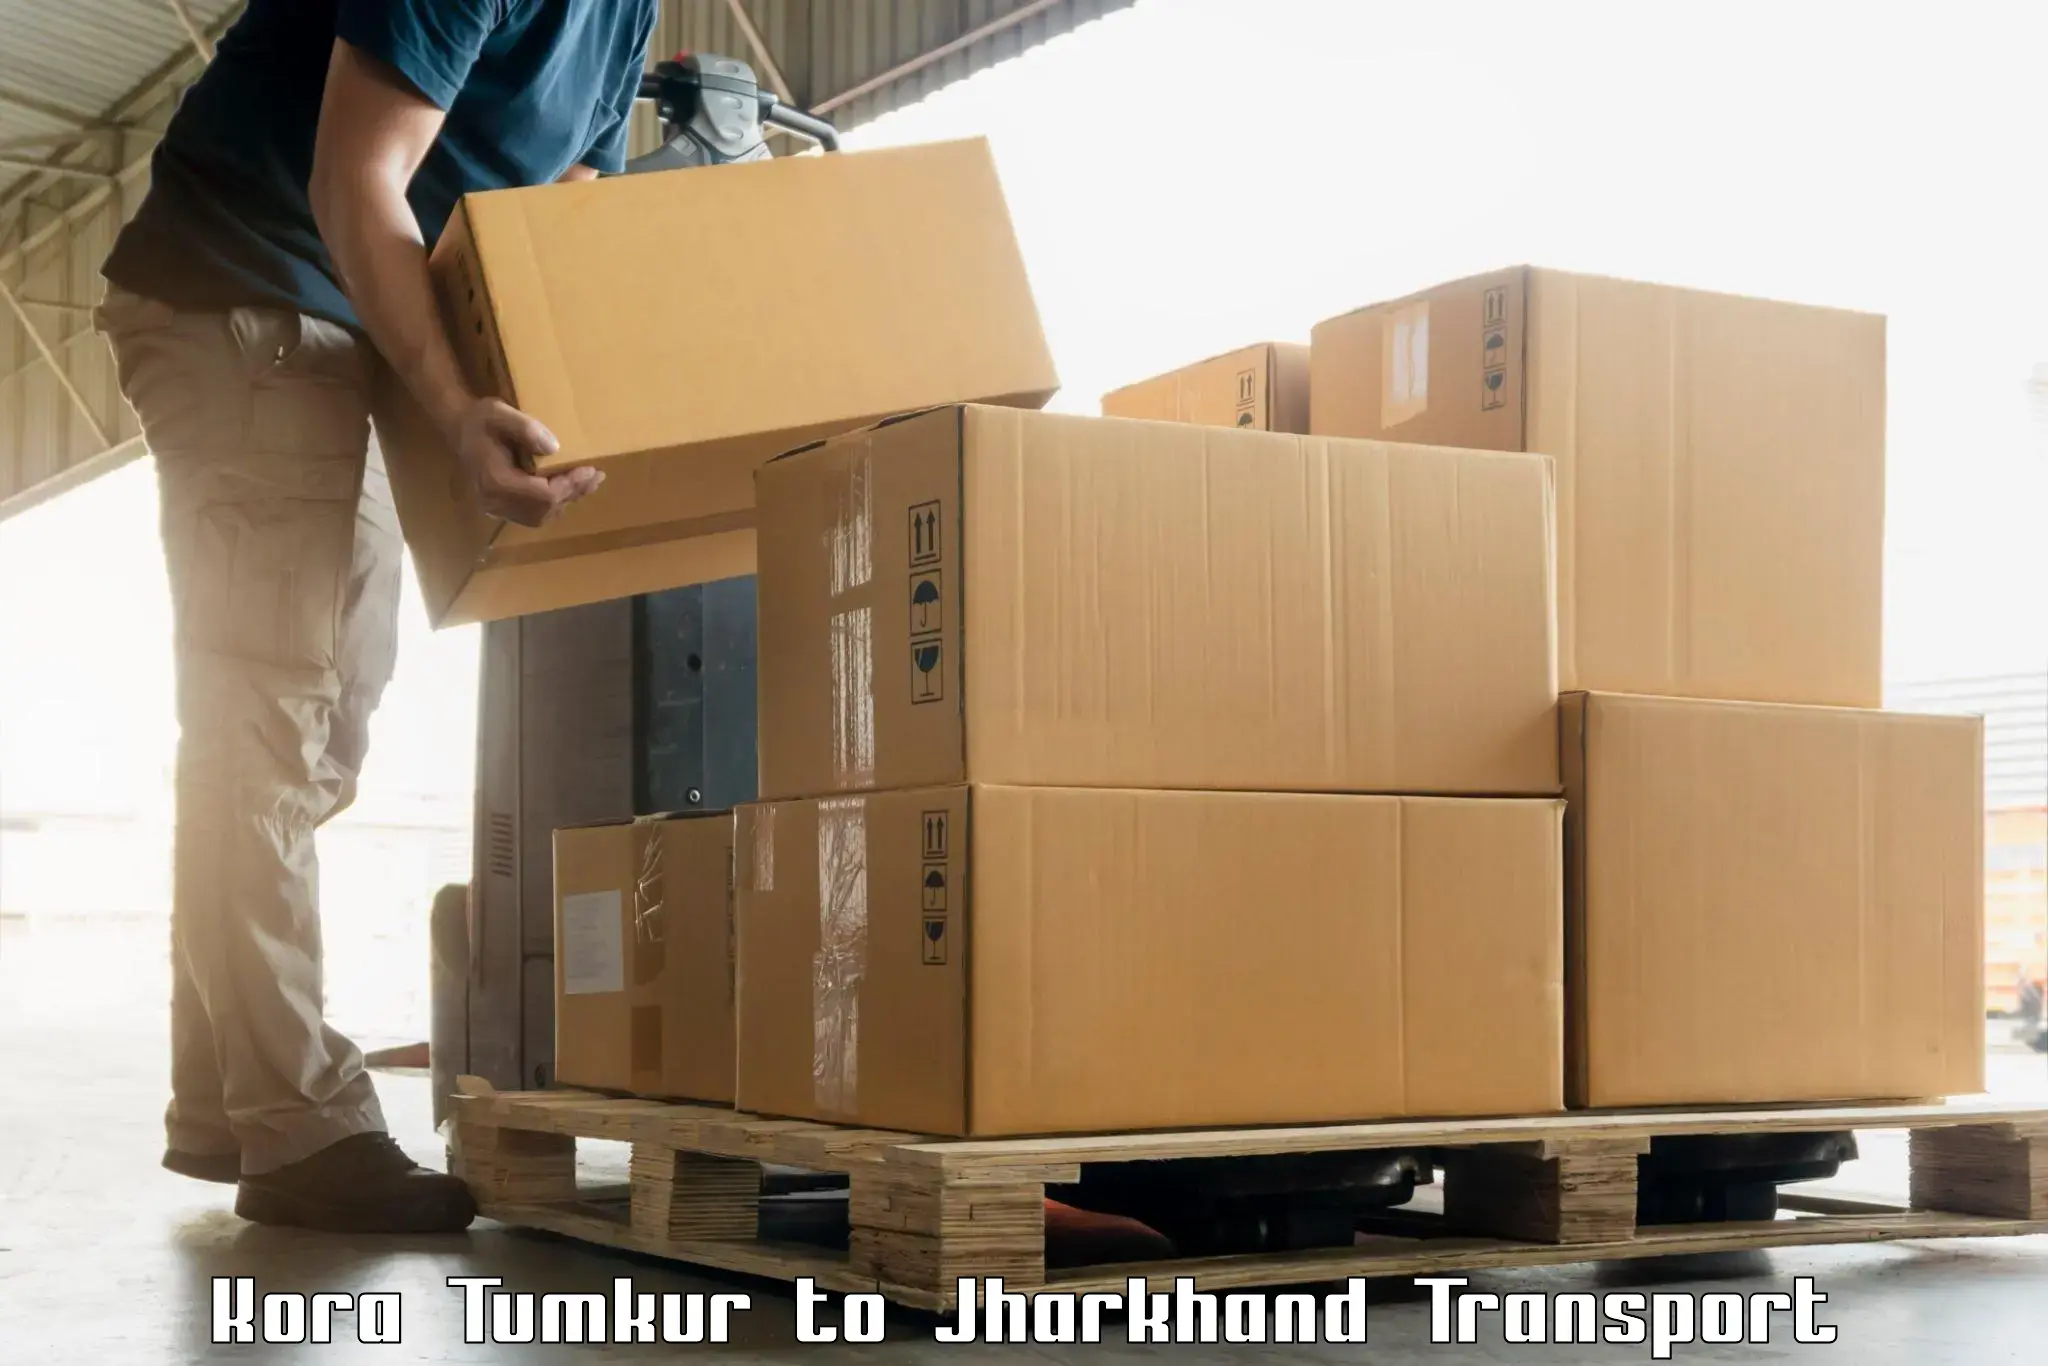 Online transport booking Kora Tumkur to Barkagaon